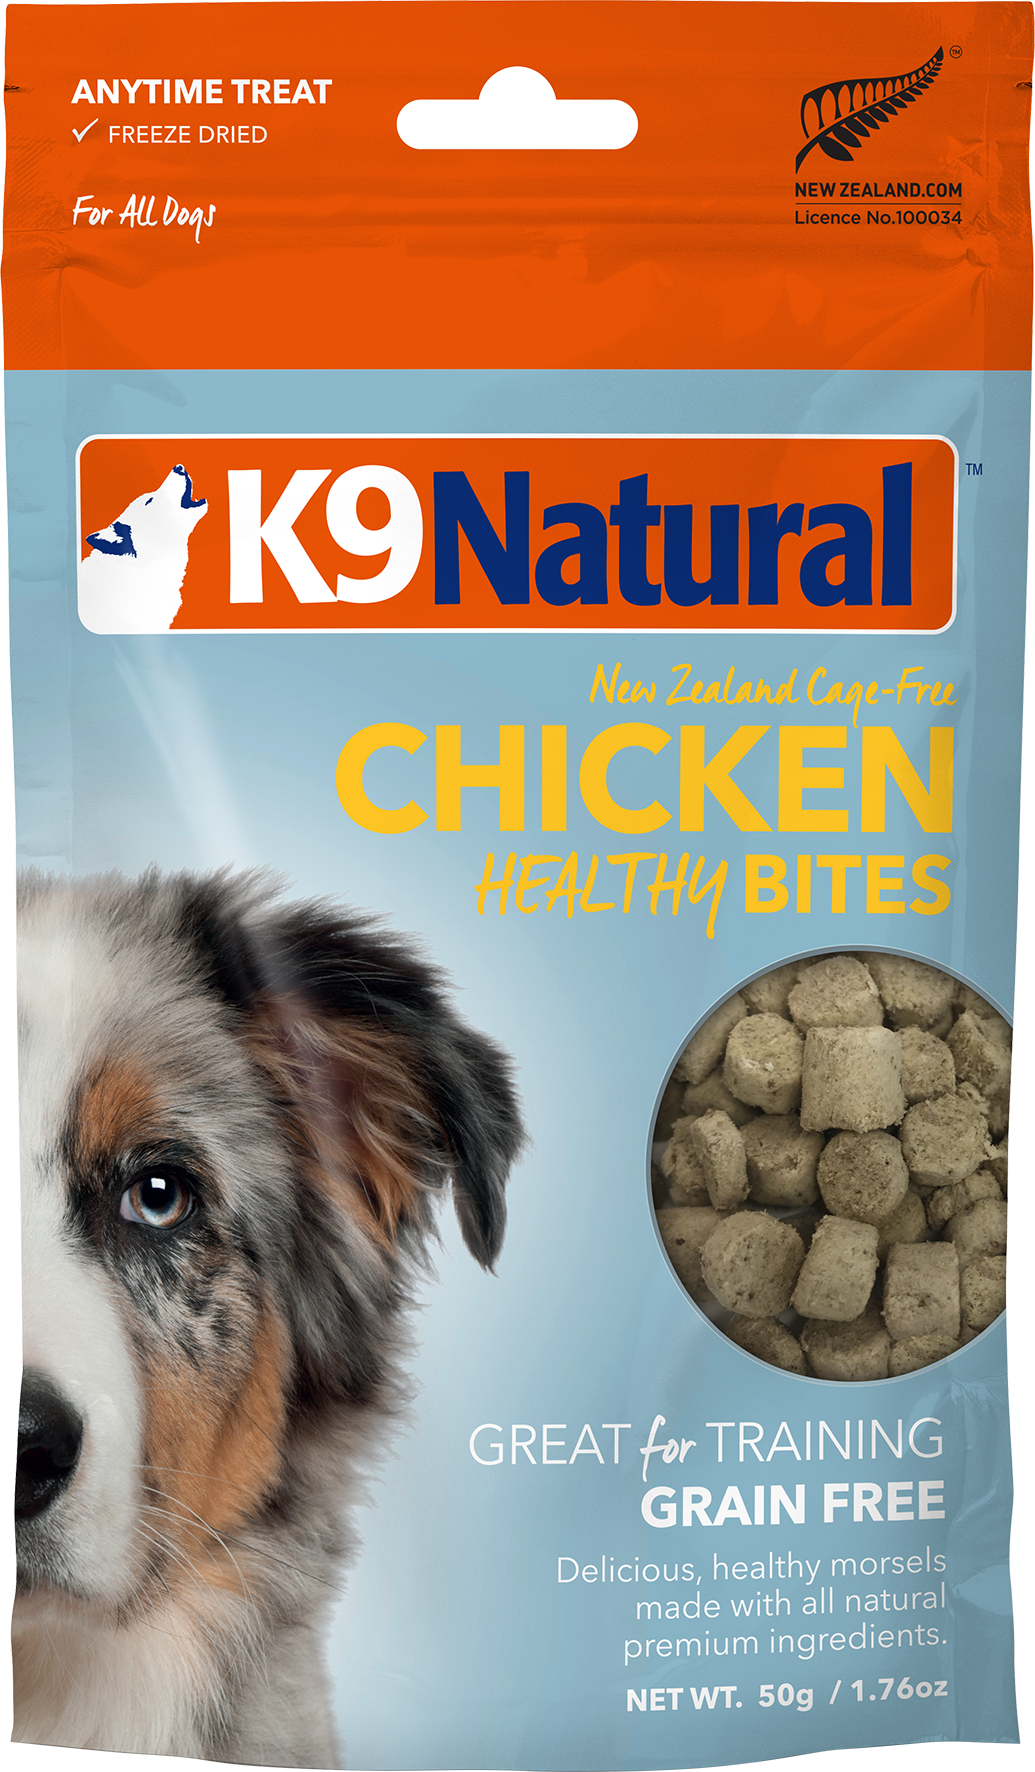 K9 Natural - Chicken Healthy Bites - 50g